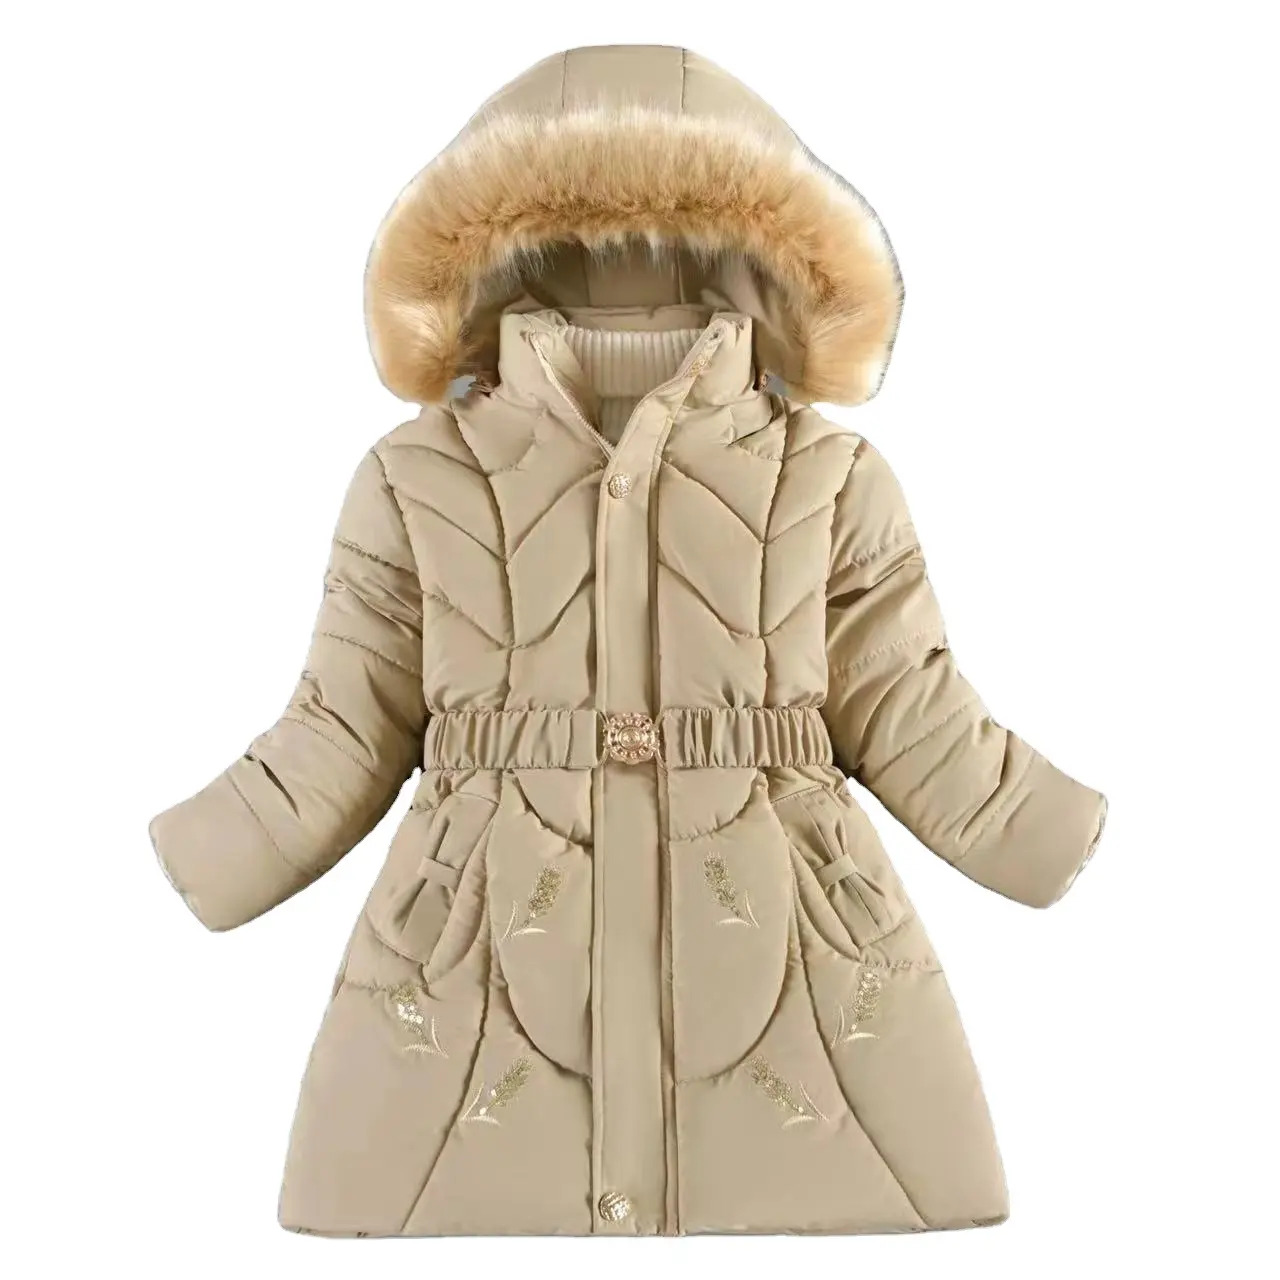 Vente en gros dernières créations mode hiver garder au chaud filles doudoune adolescent épais résistant au froid à capuche coupe-vent manteau